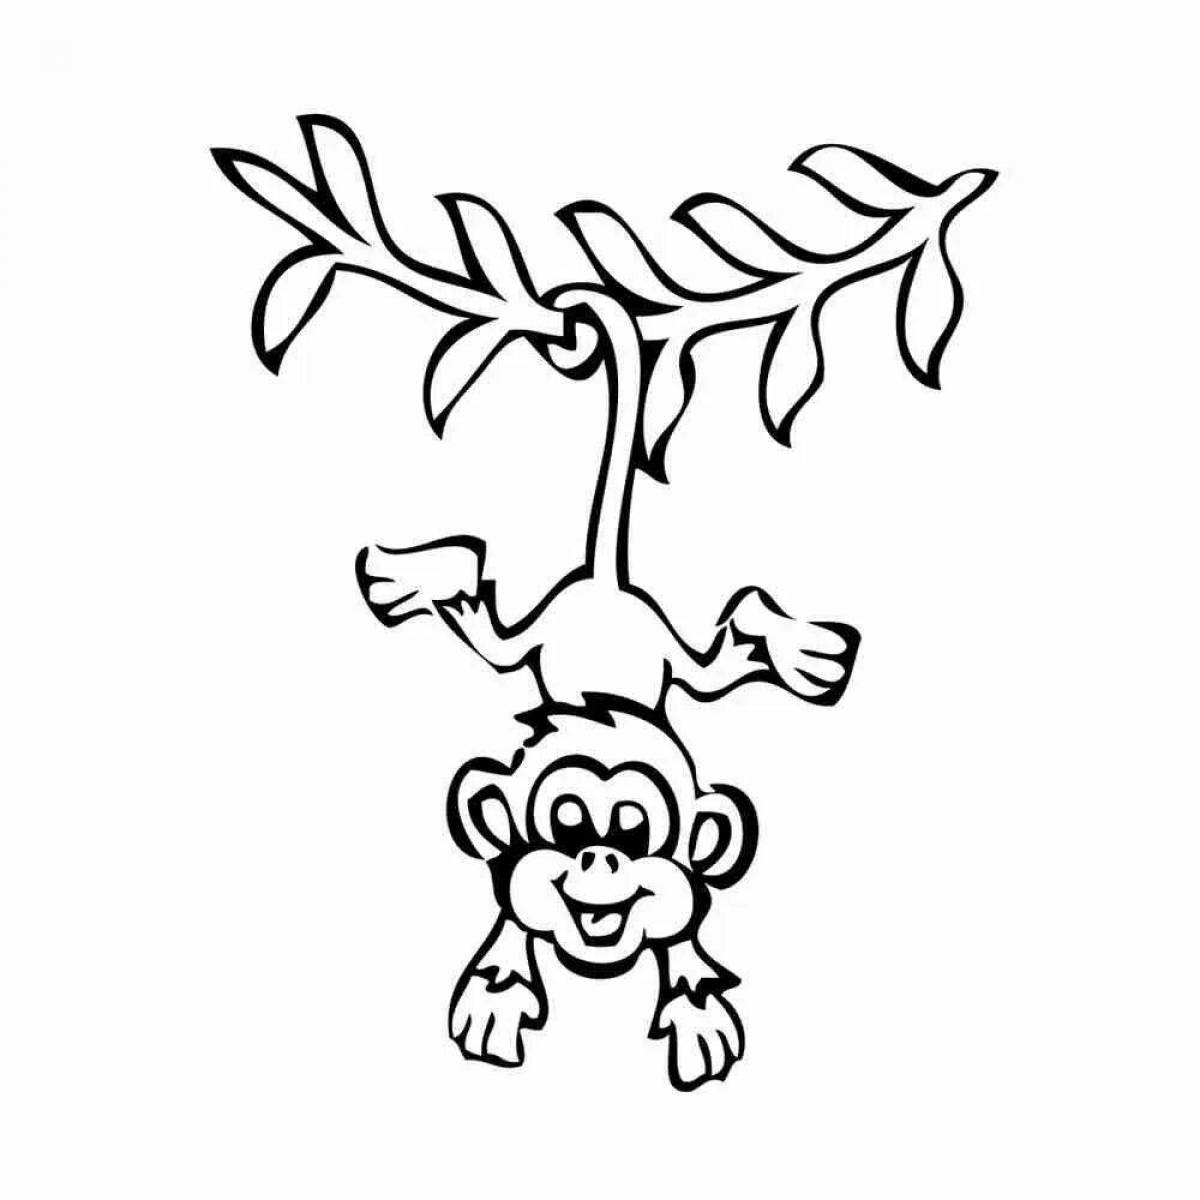 Monkey#7